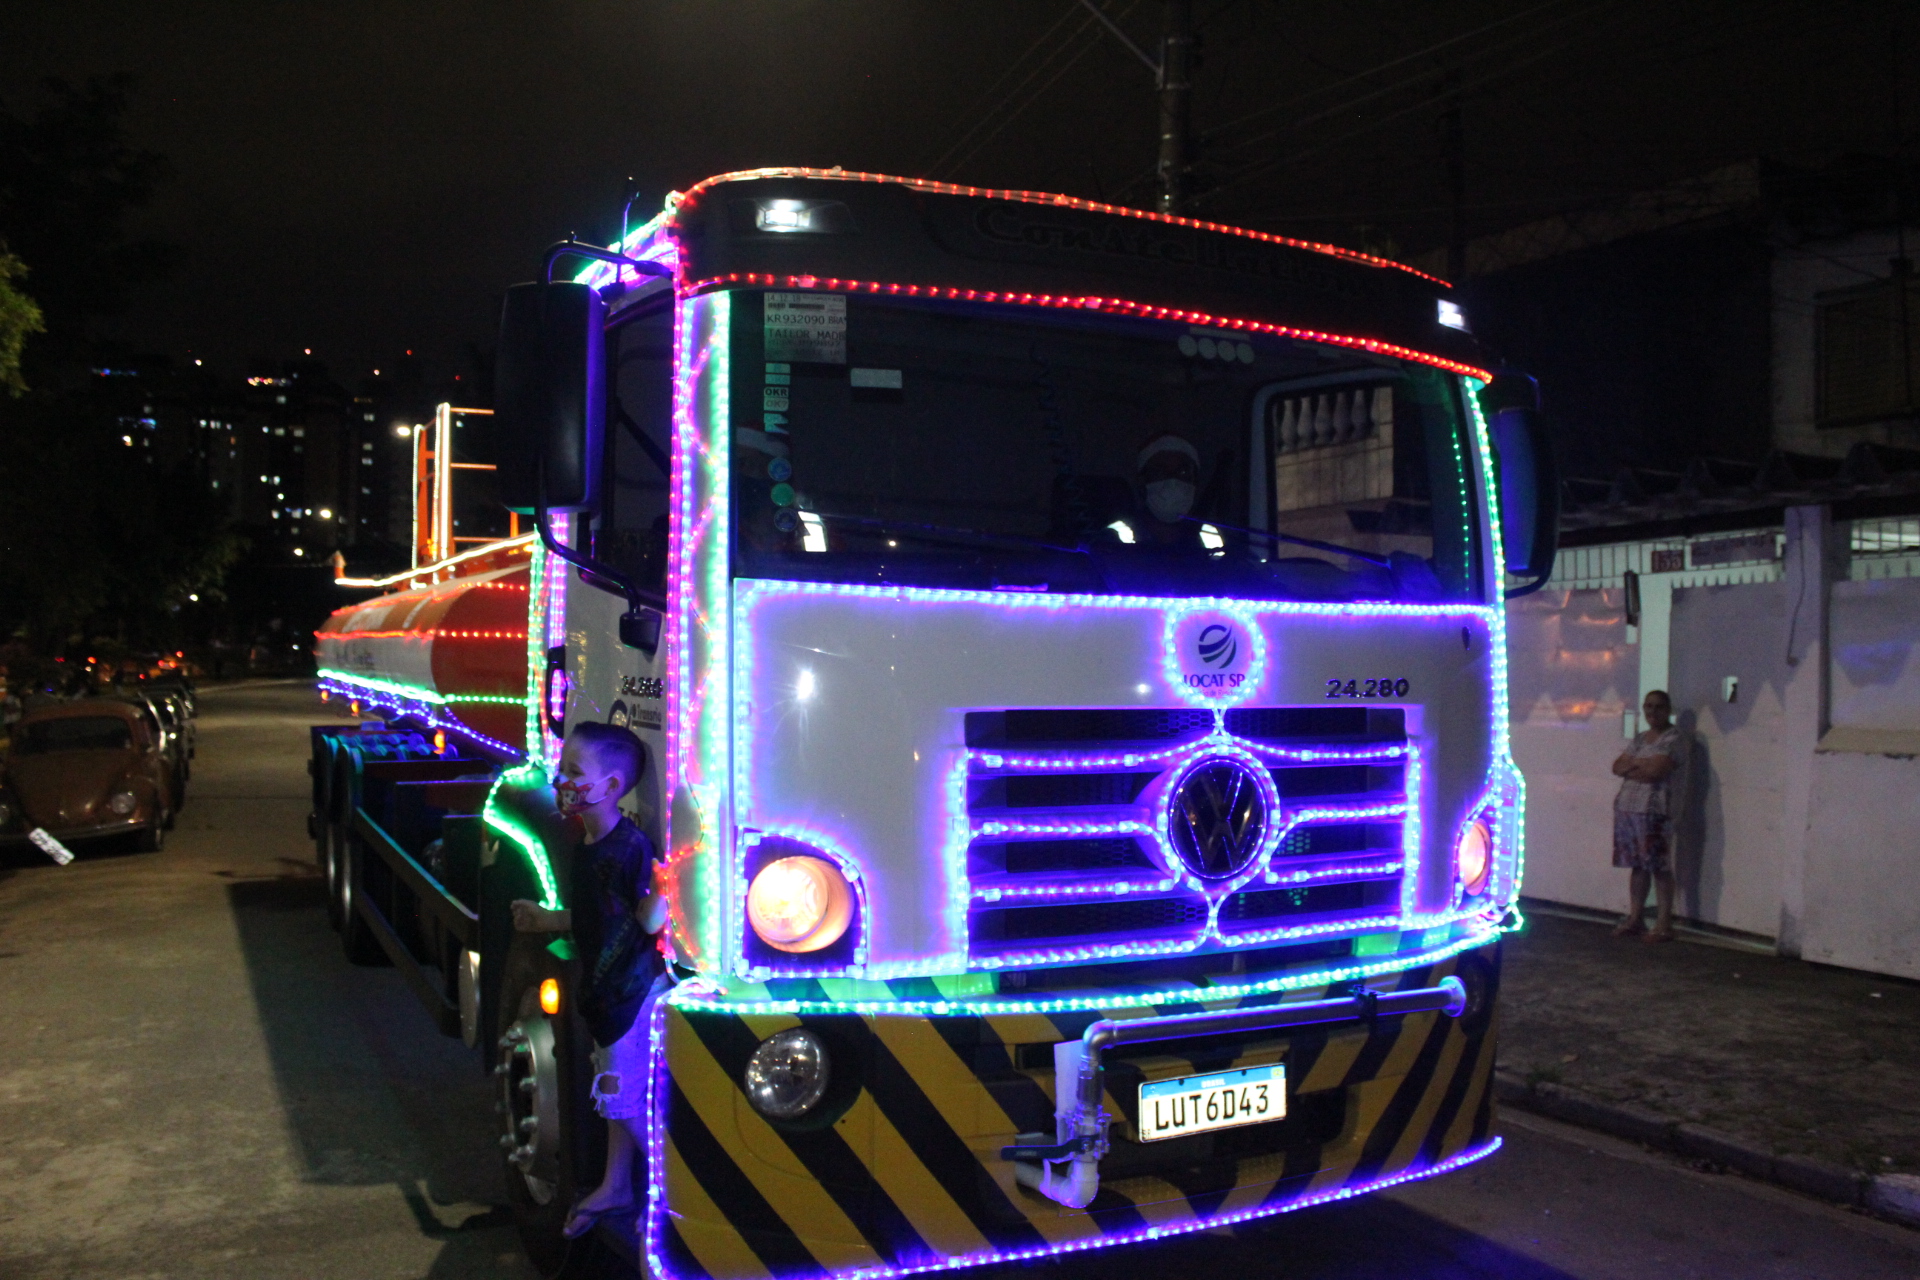 #ParaTodosVerem foto do caminhão de limpeza urbana iluminado com luzes coloridas na praça